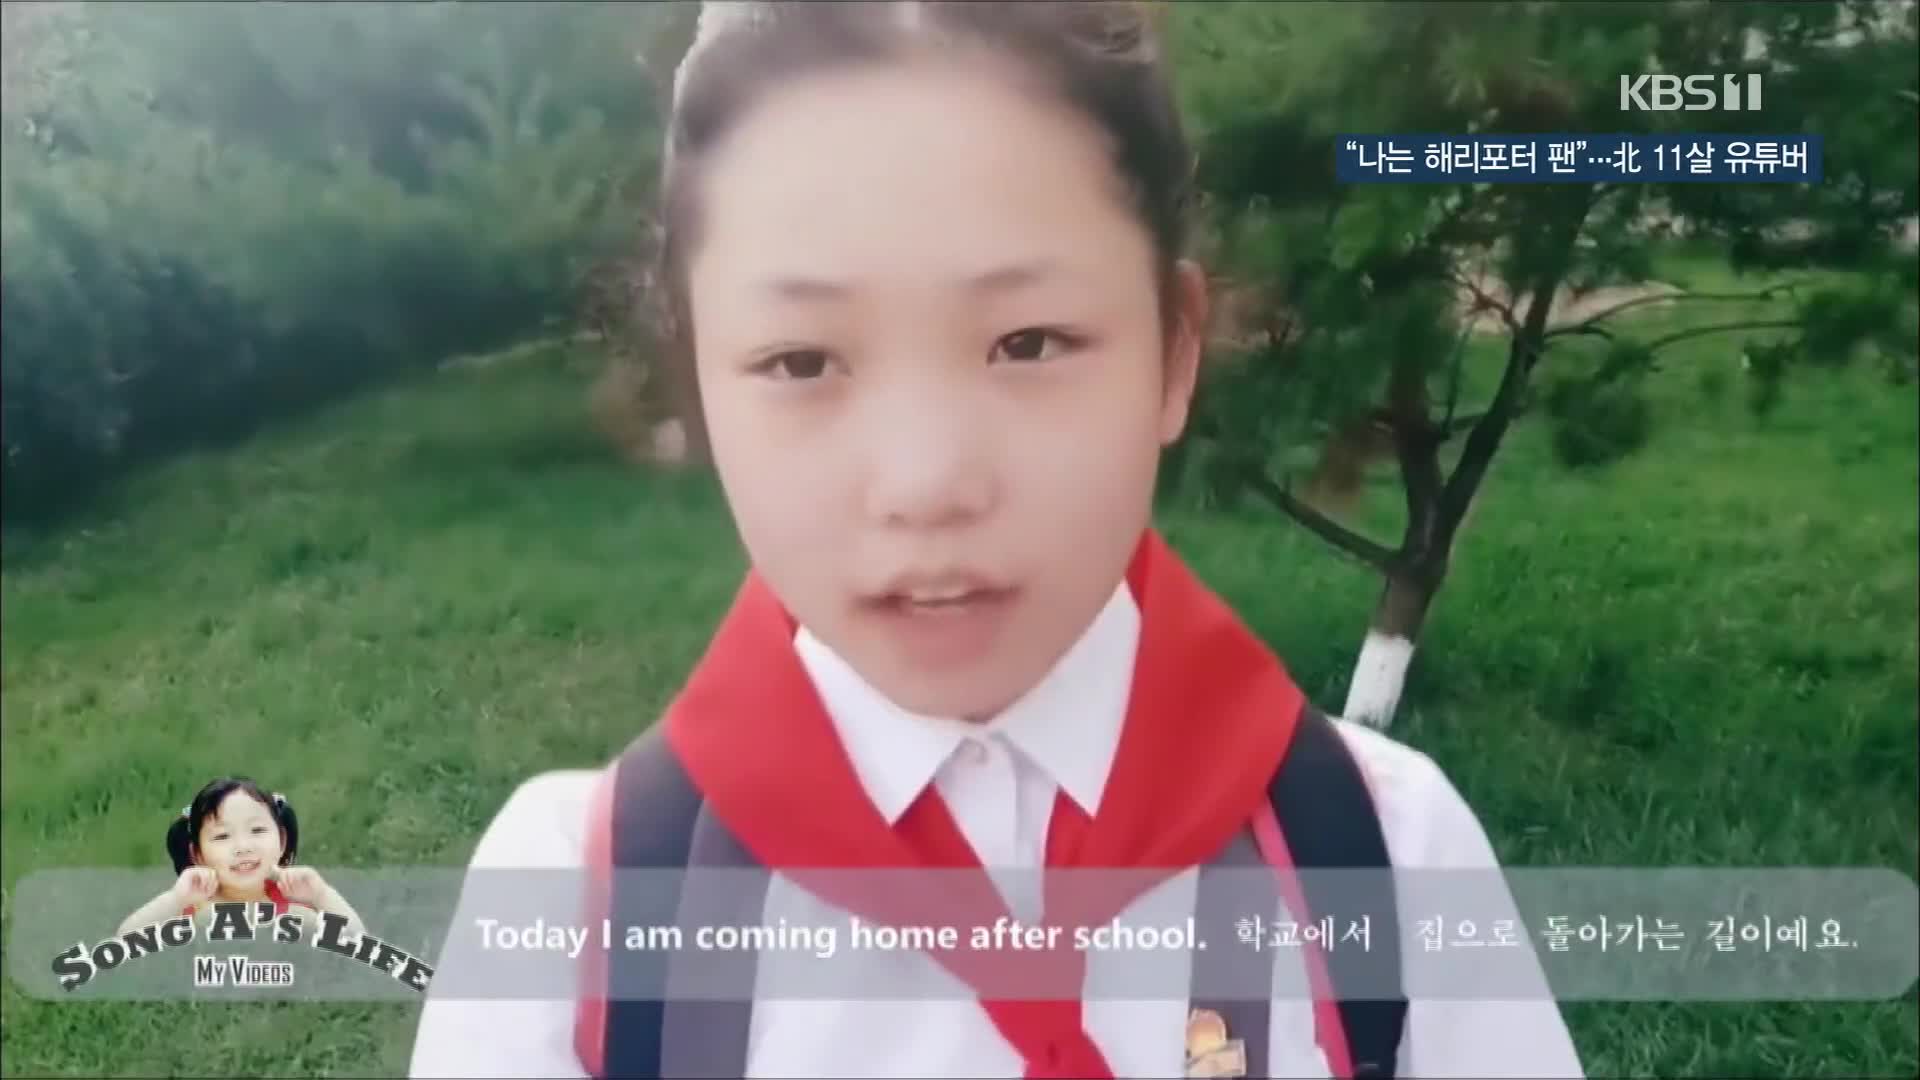 [북한 영상] “나는 해리포터 팬”…11살 北 유튜버